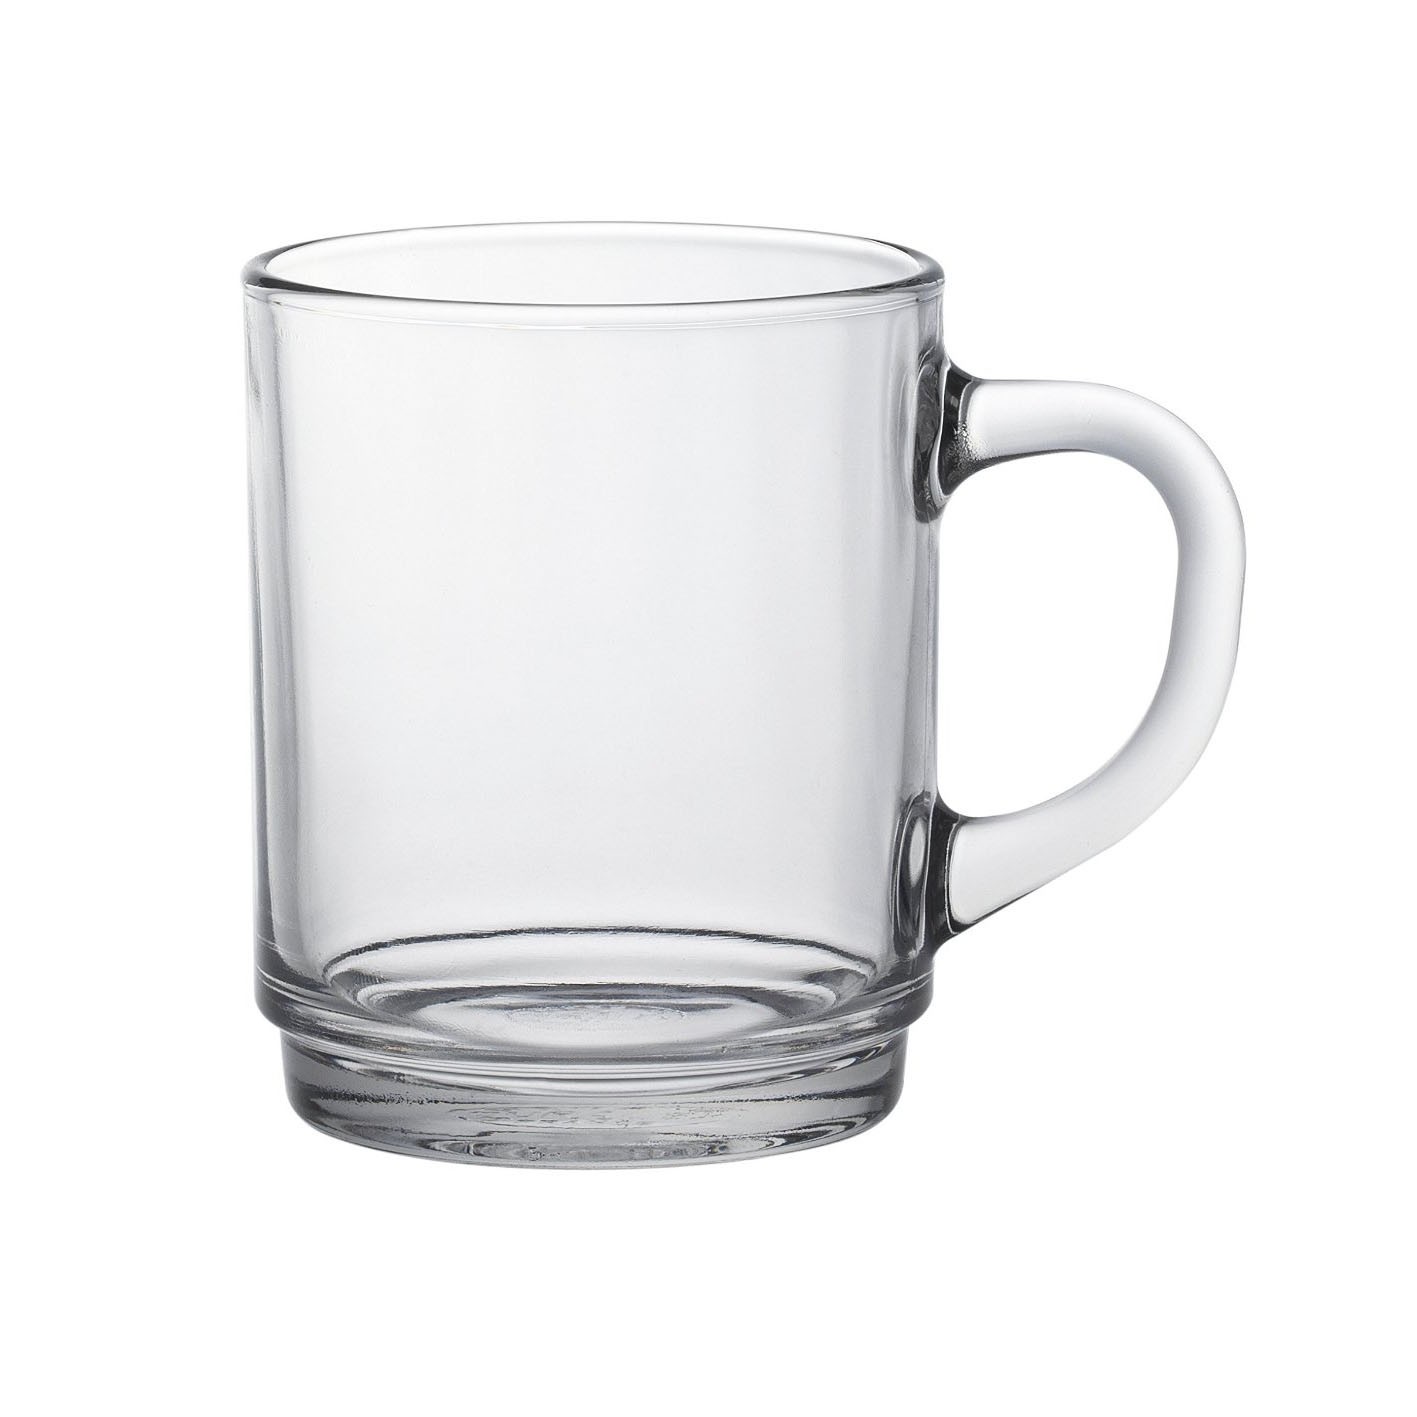 Tasse à déjeuner / Mug 26cl en verre transparent - Lot de 6 - Versailles -  Duralex